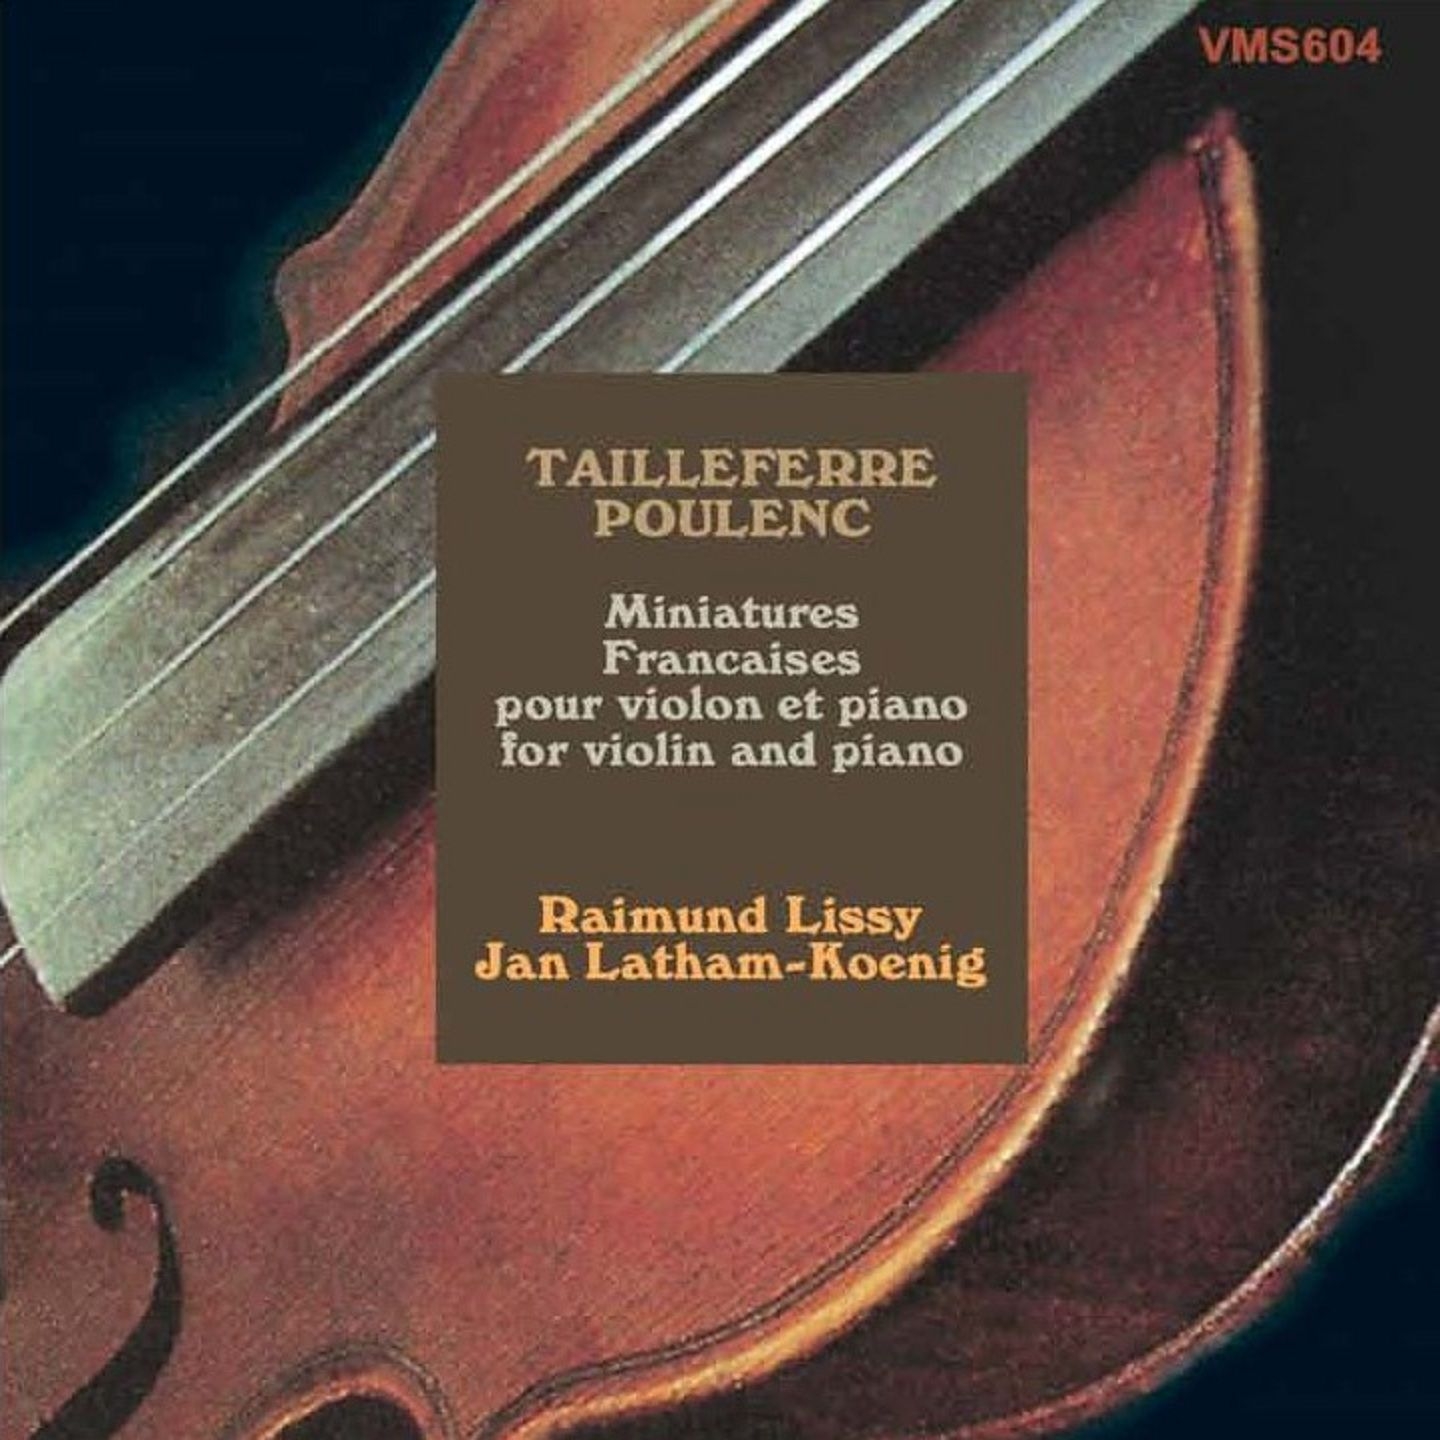 Sonate pour violon et piano, FP 119: I. Allegro con fuoco